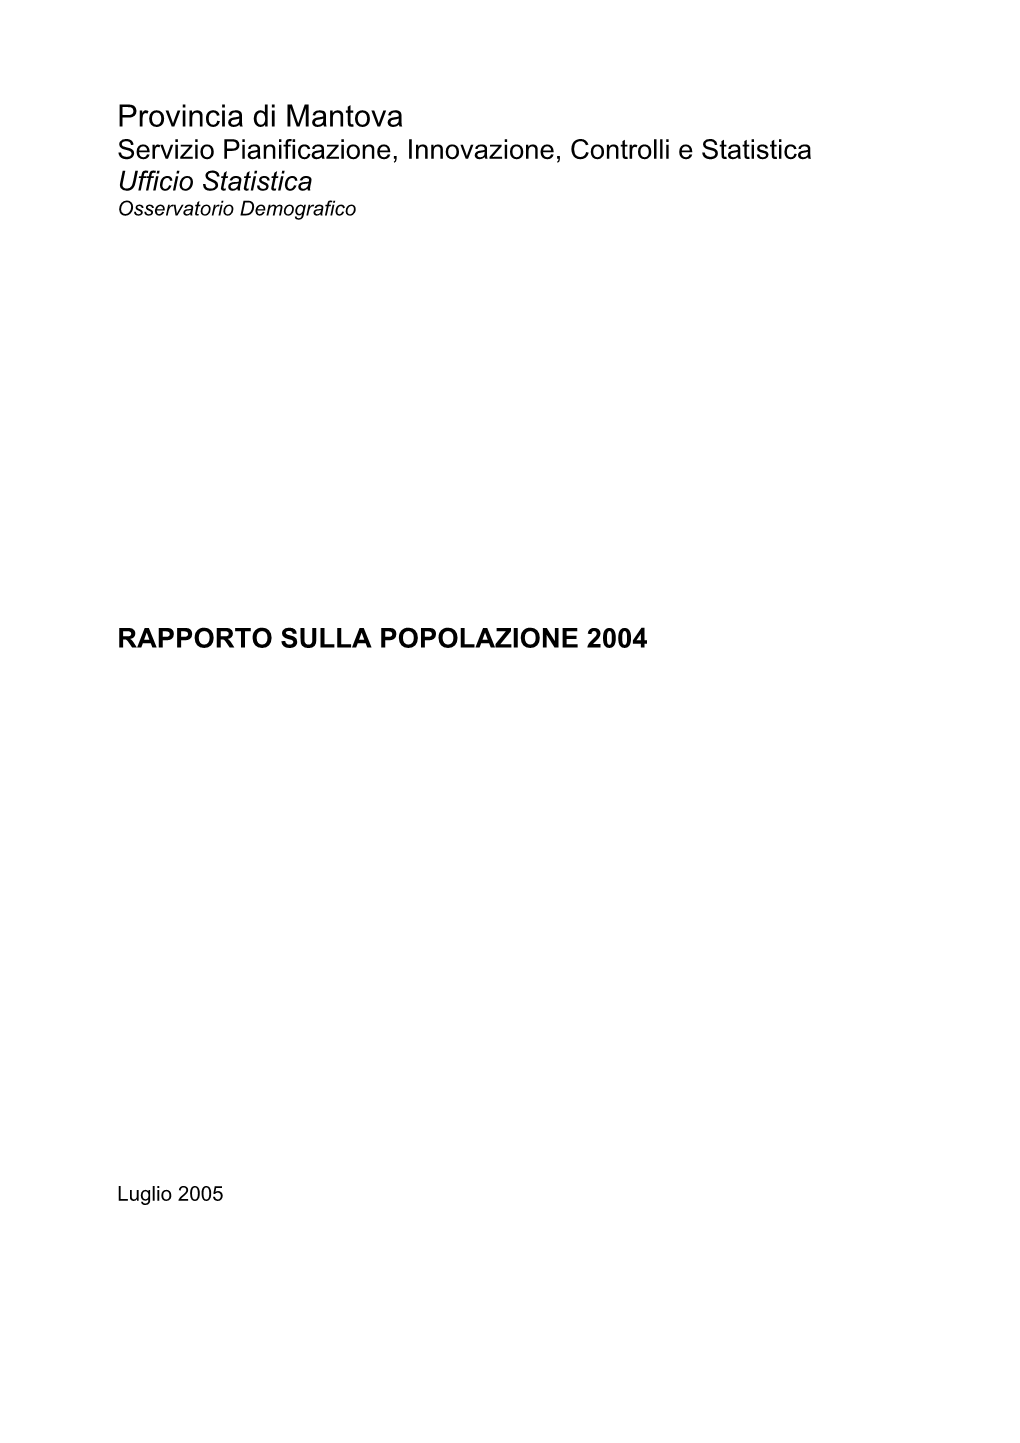 Rapporto Sulla Popolazione Mantovana 2005